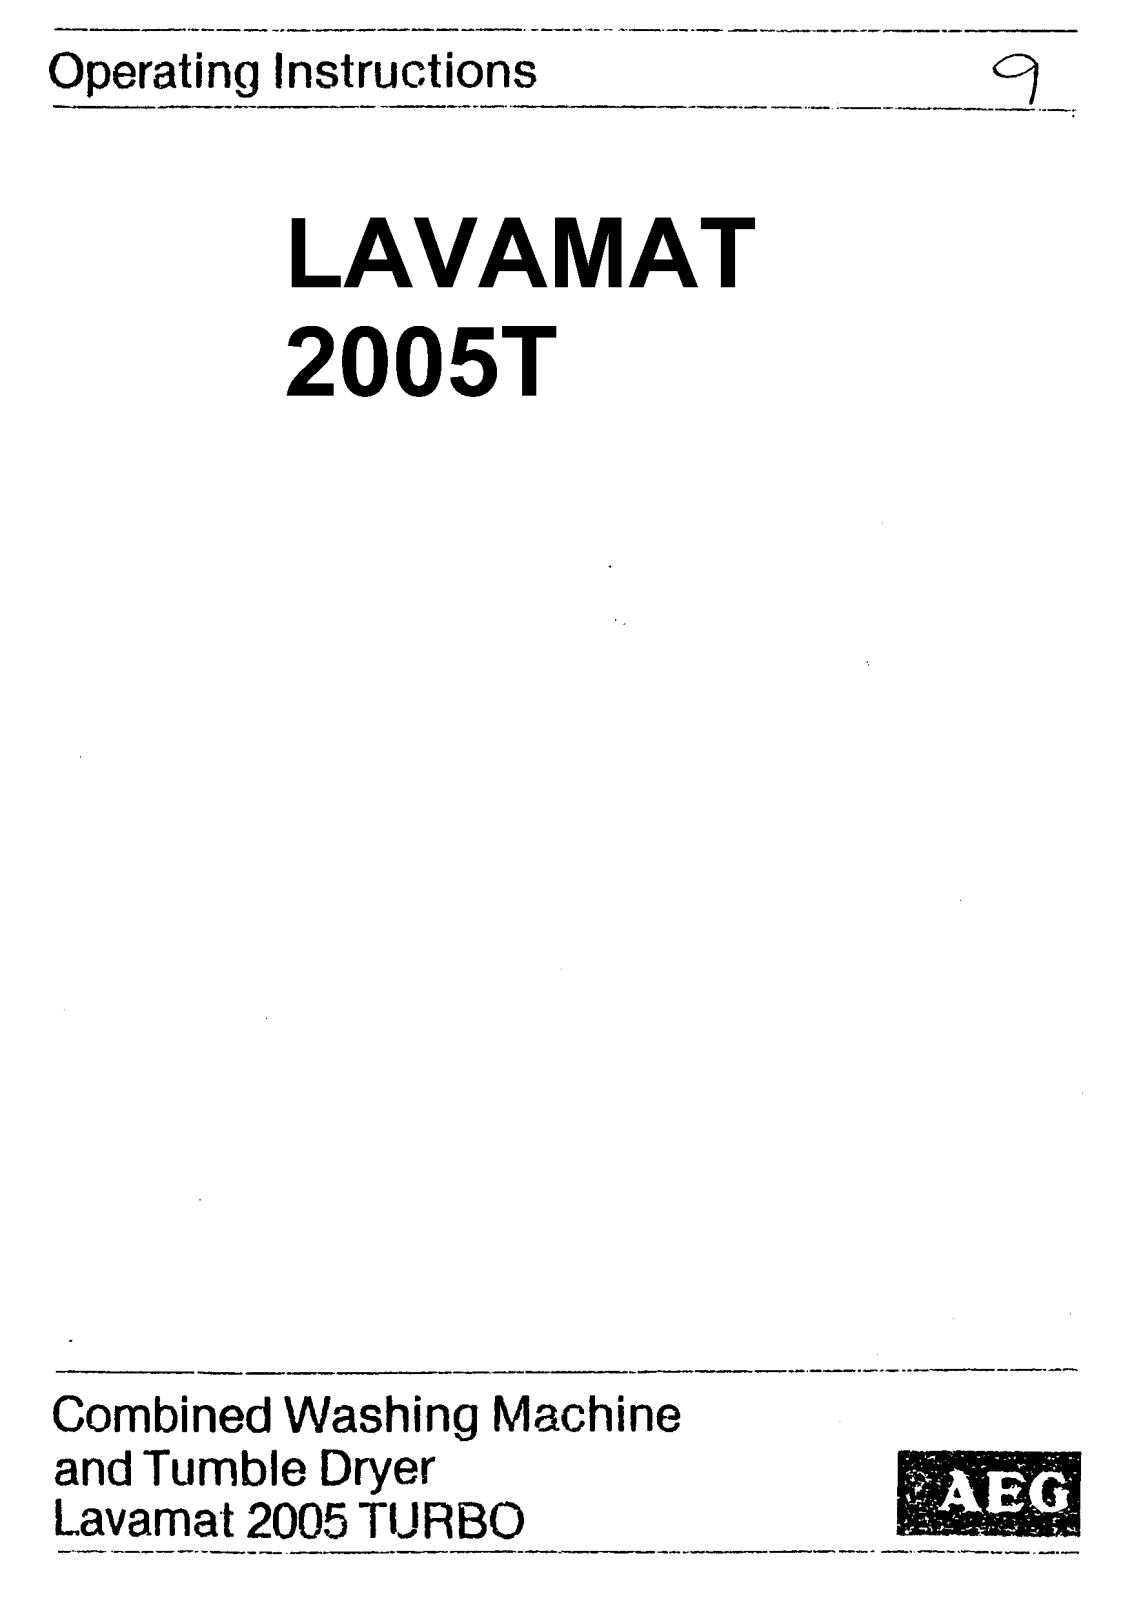 AEG LAV2005TURBOGB User Manual